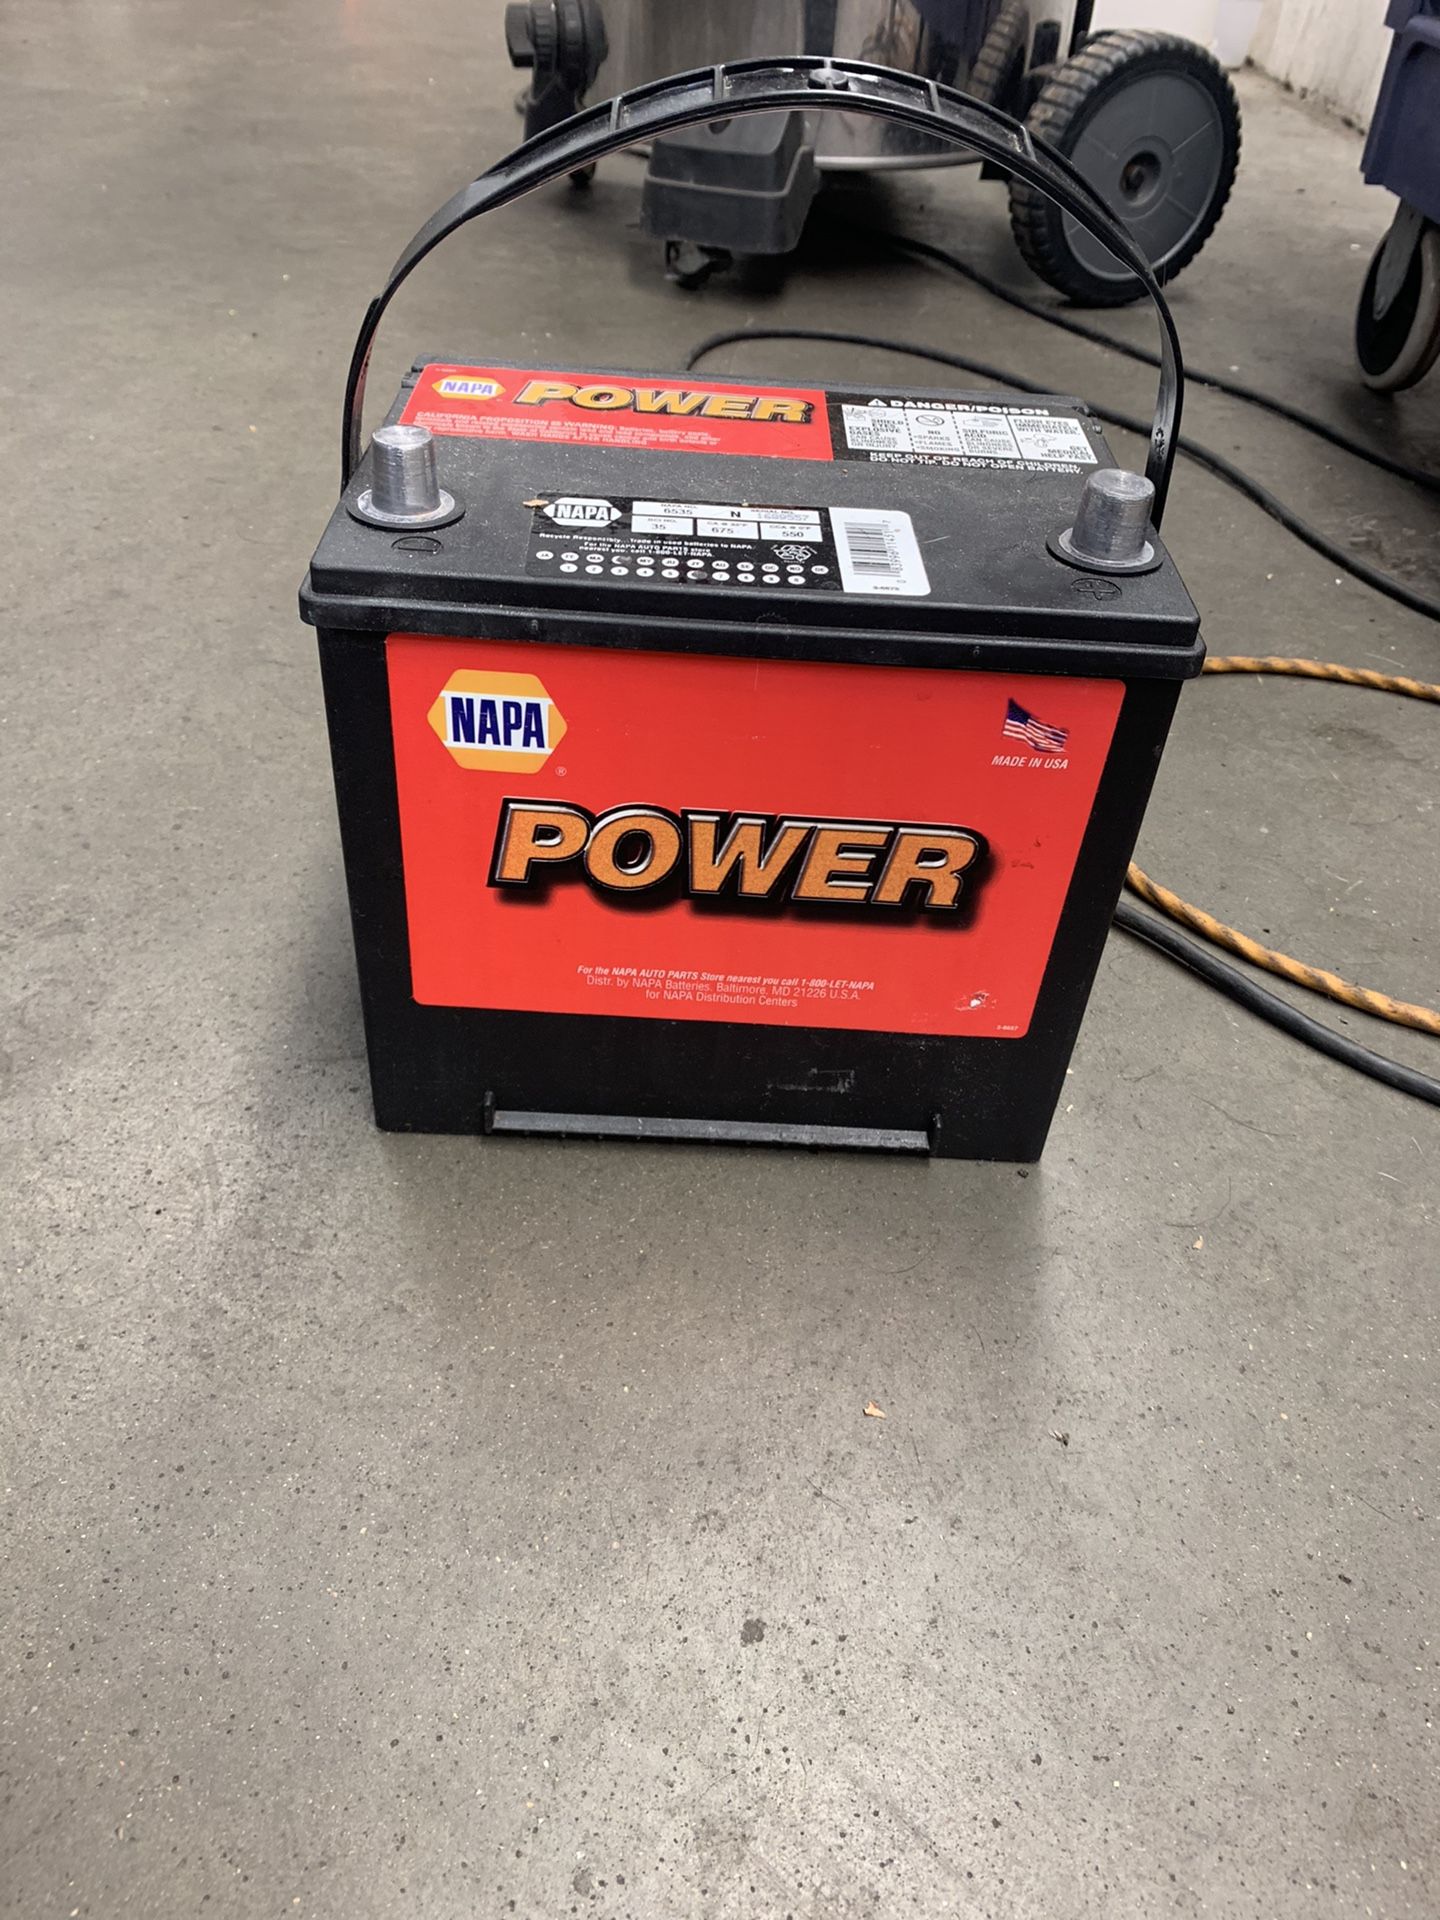 Napa Power car battery